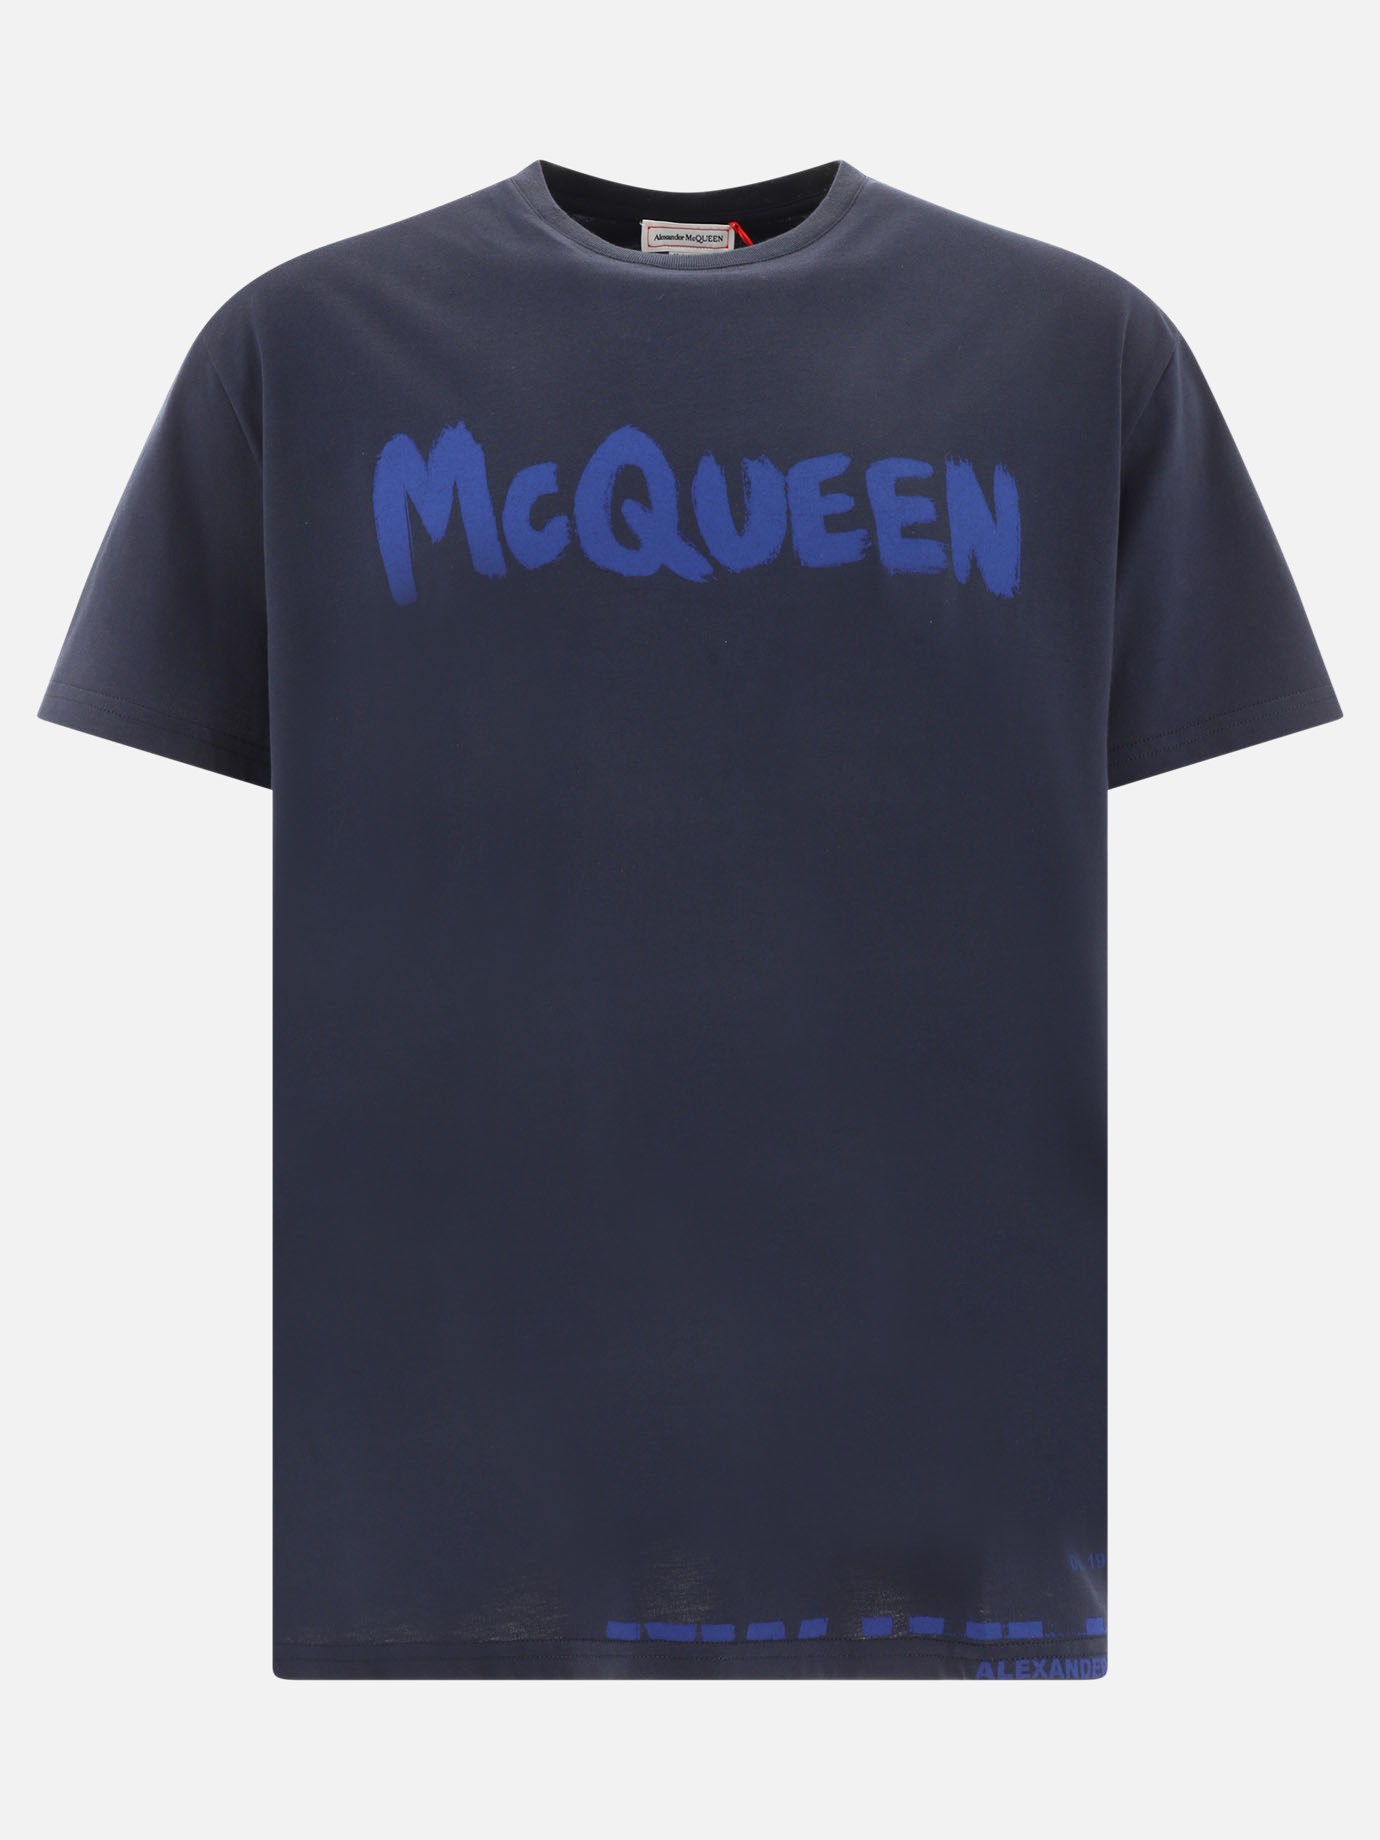 T-shirt  McQueen Graffiti  by Alexander McQueen